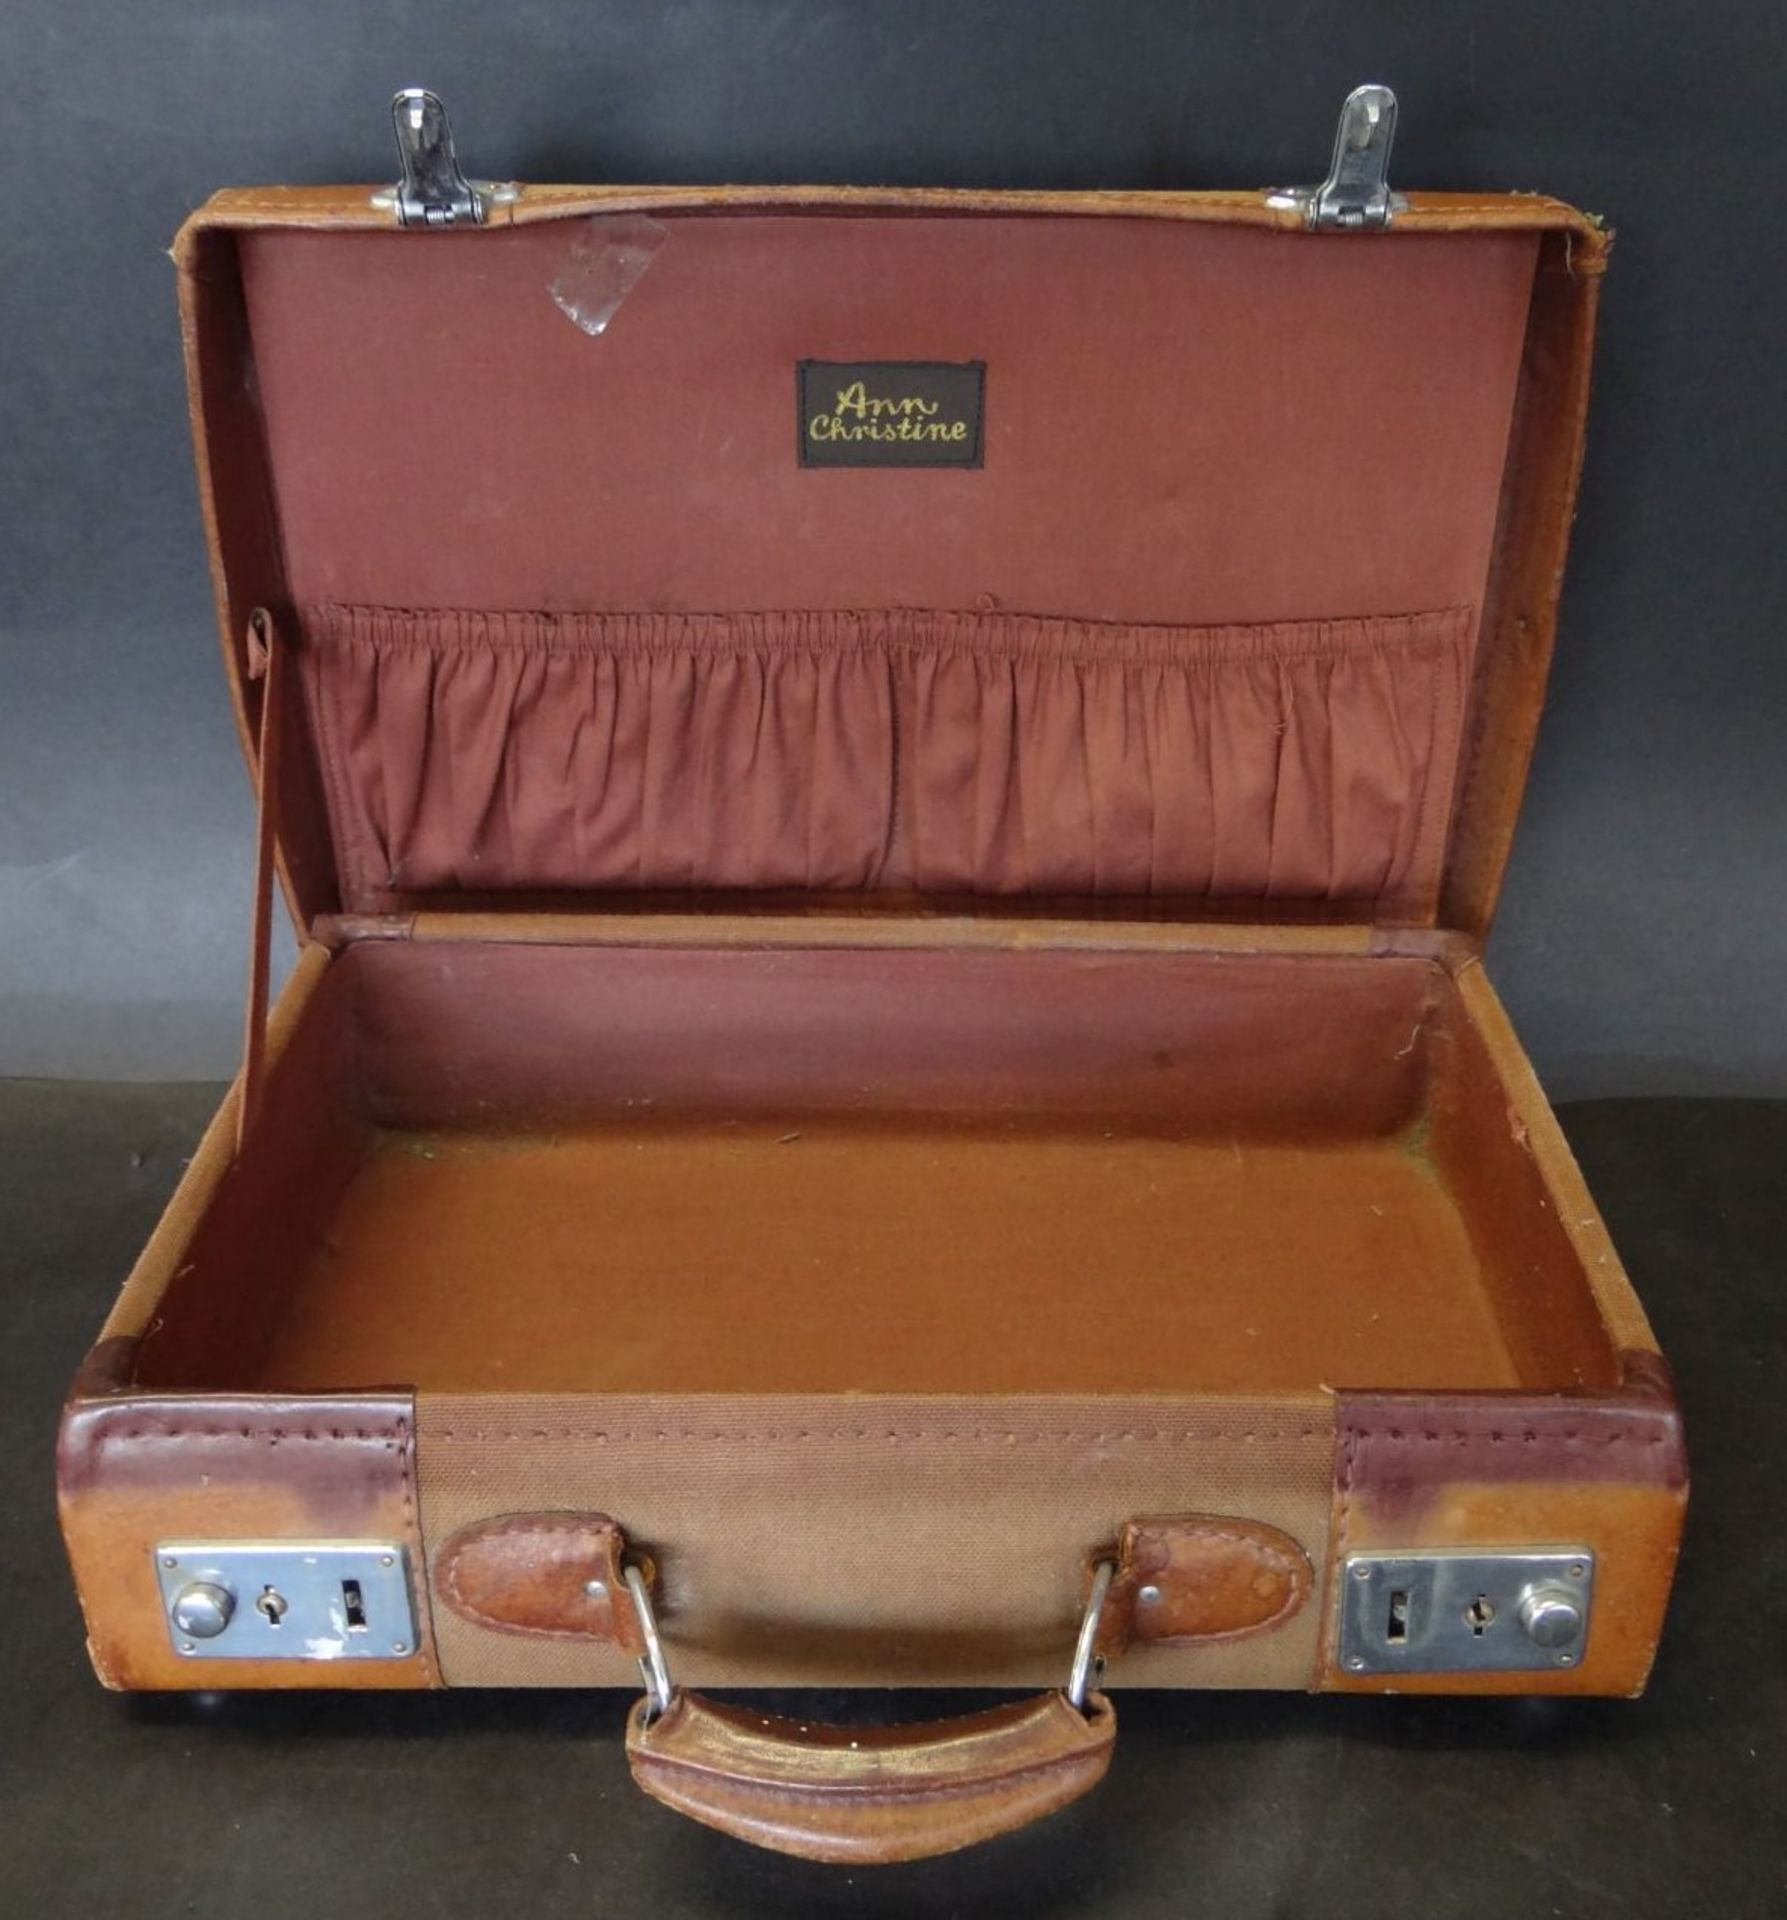 kl. Leder-Handkoffer "Ann Christin", mttiig Stoff, 36x24 cm, Alters-u. Gebrauchsspuren - Bild 3 aus 5